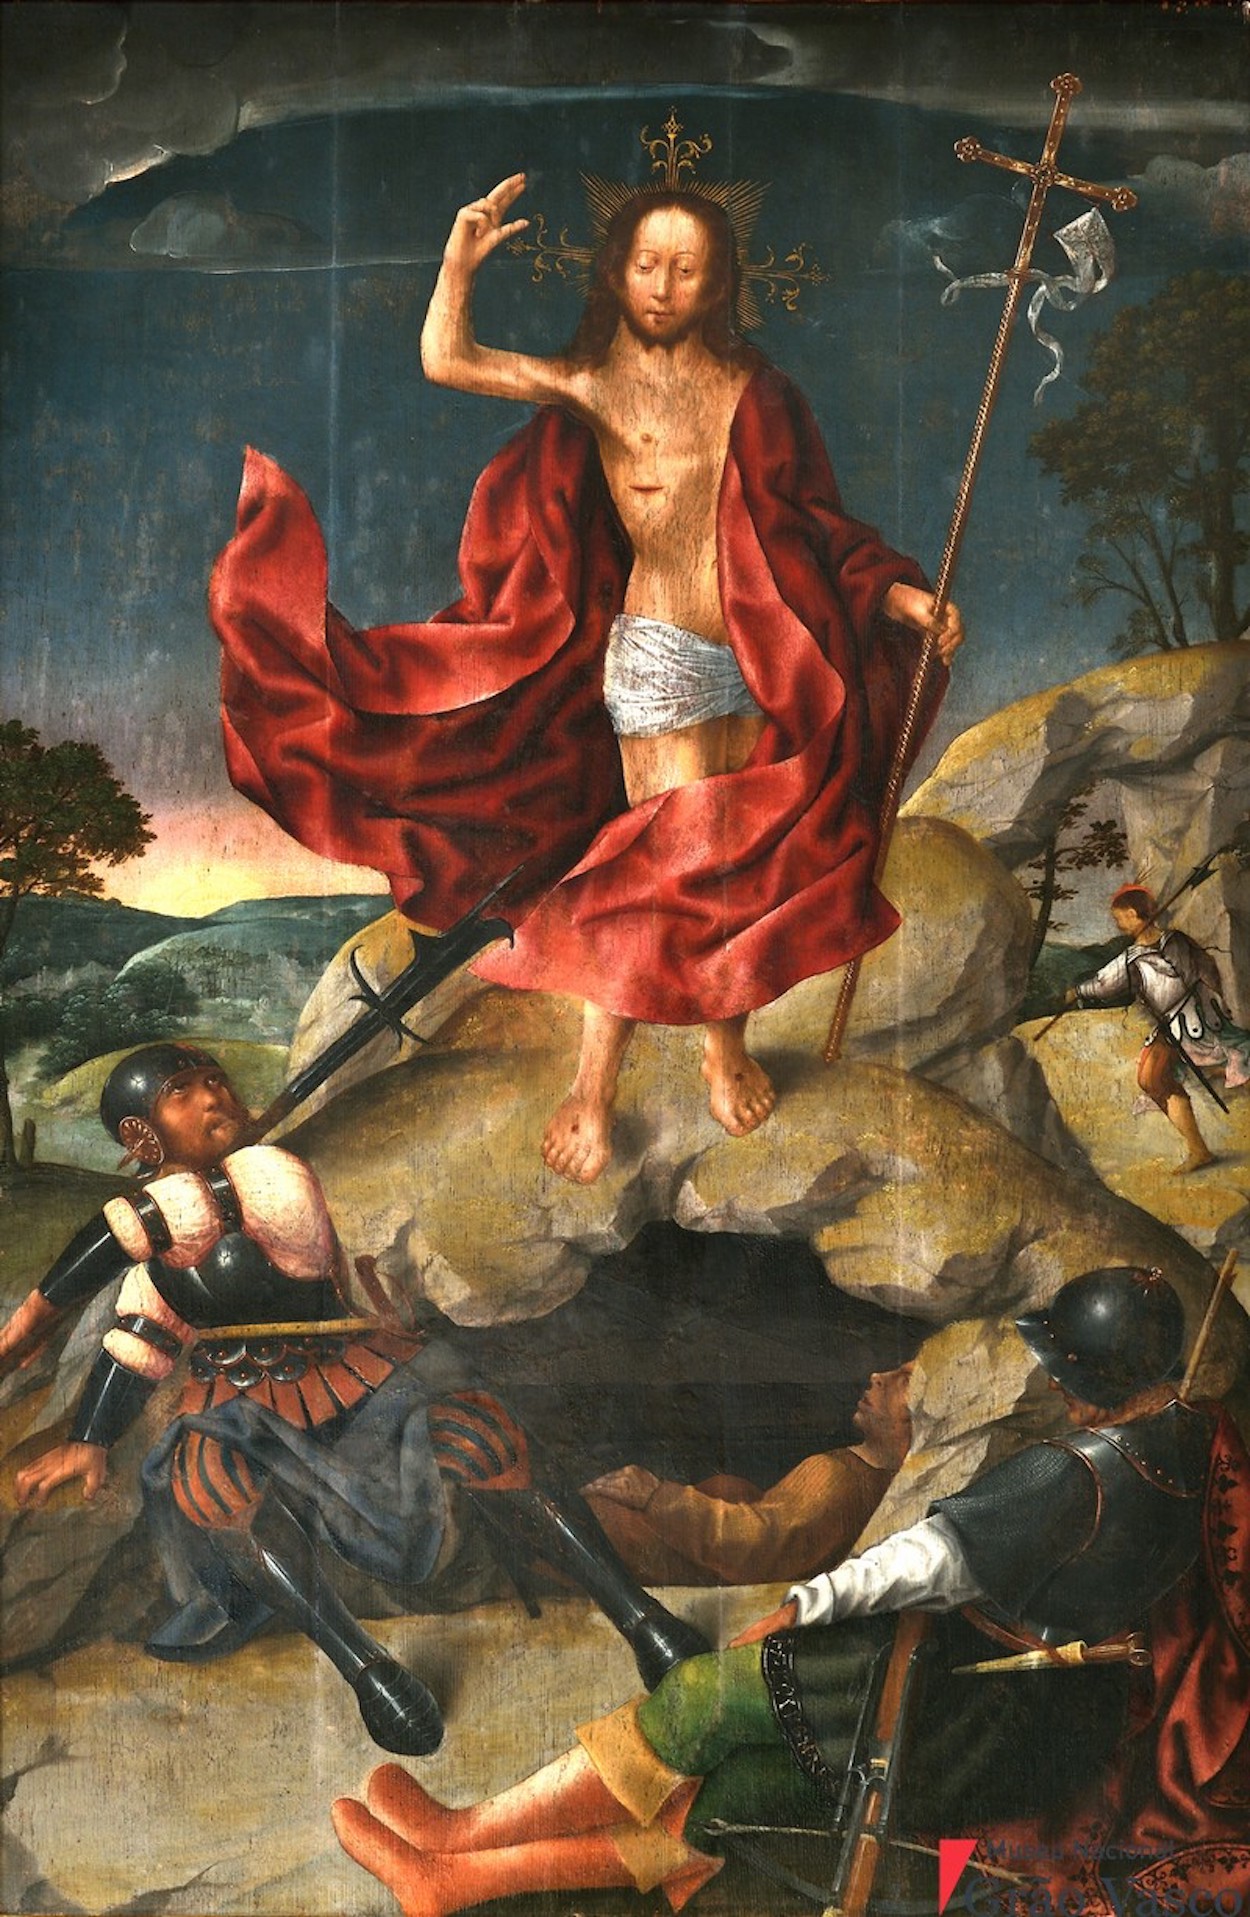 La Résurrection by Grão Vasco - 1501-1506 - 132 cm x 82 cm Musée national Grão Vasco, Viseu, Portugal